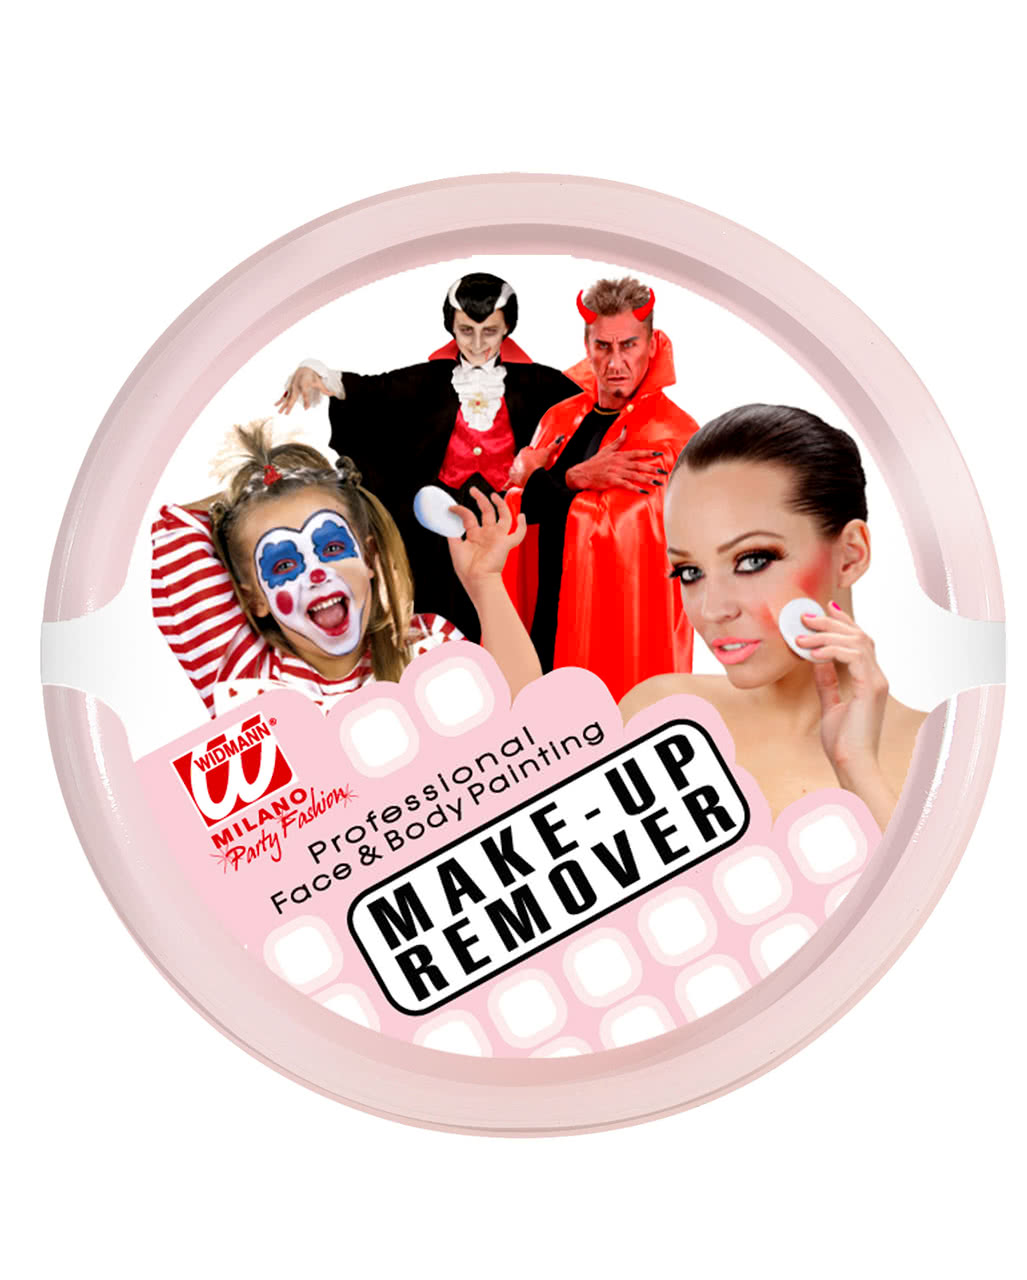 Abschminke - Make Up Entferner 25 g für Halloween von Horror-Shop.com